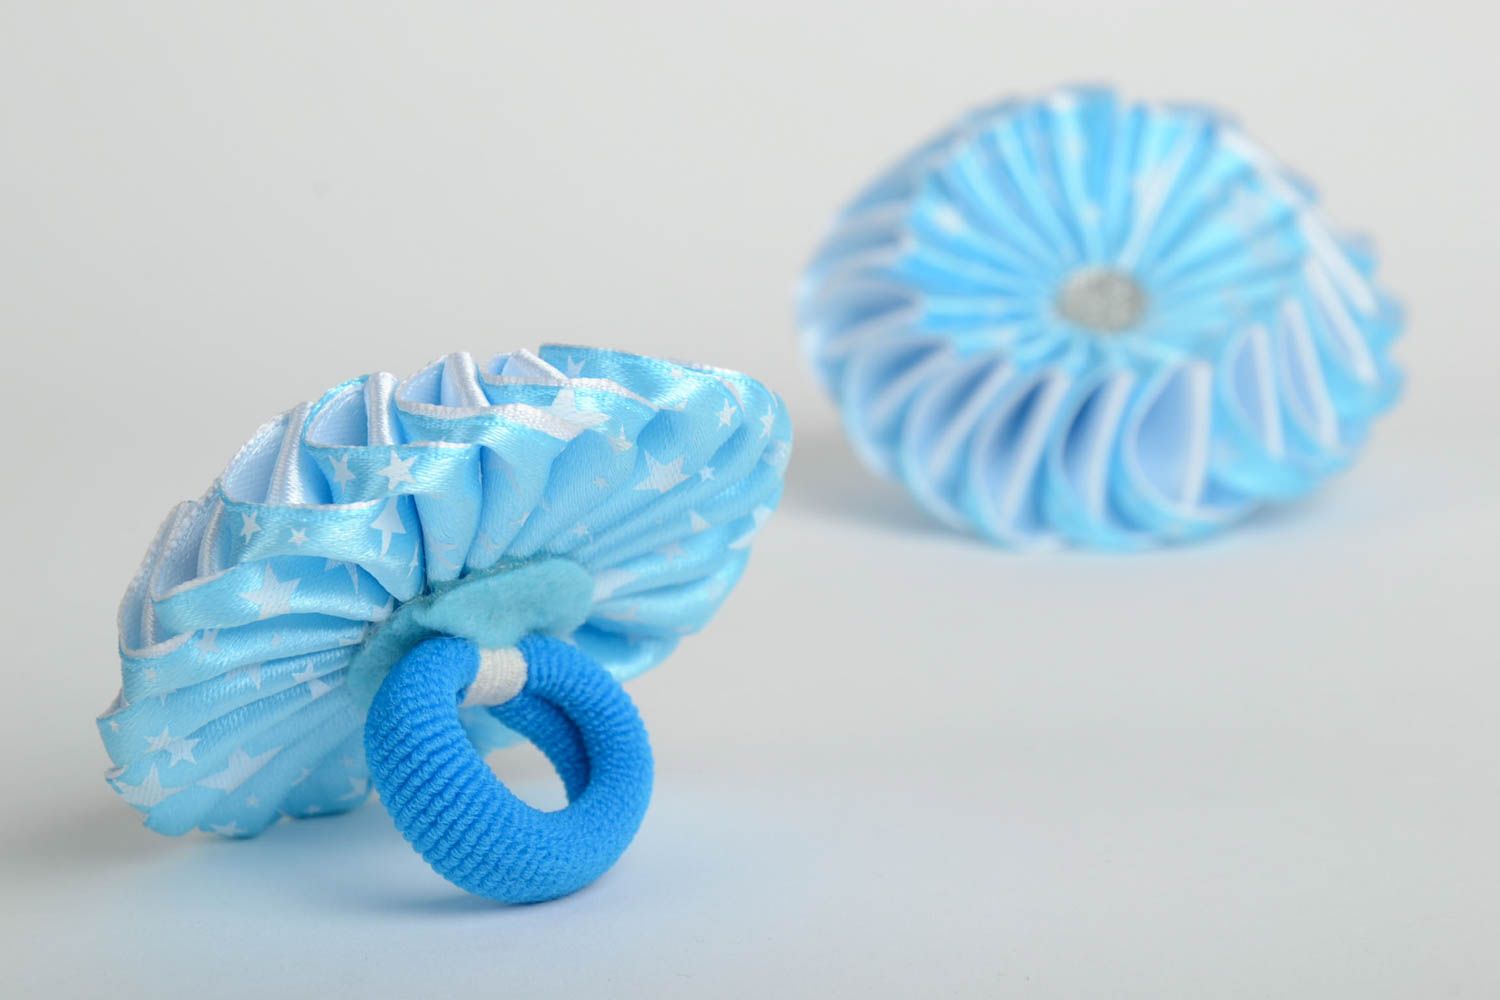 Резинки для волос из атласных лент голубые в технике канзаши набор 2 аксессуара фото 3